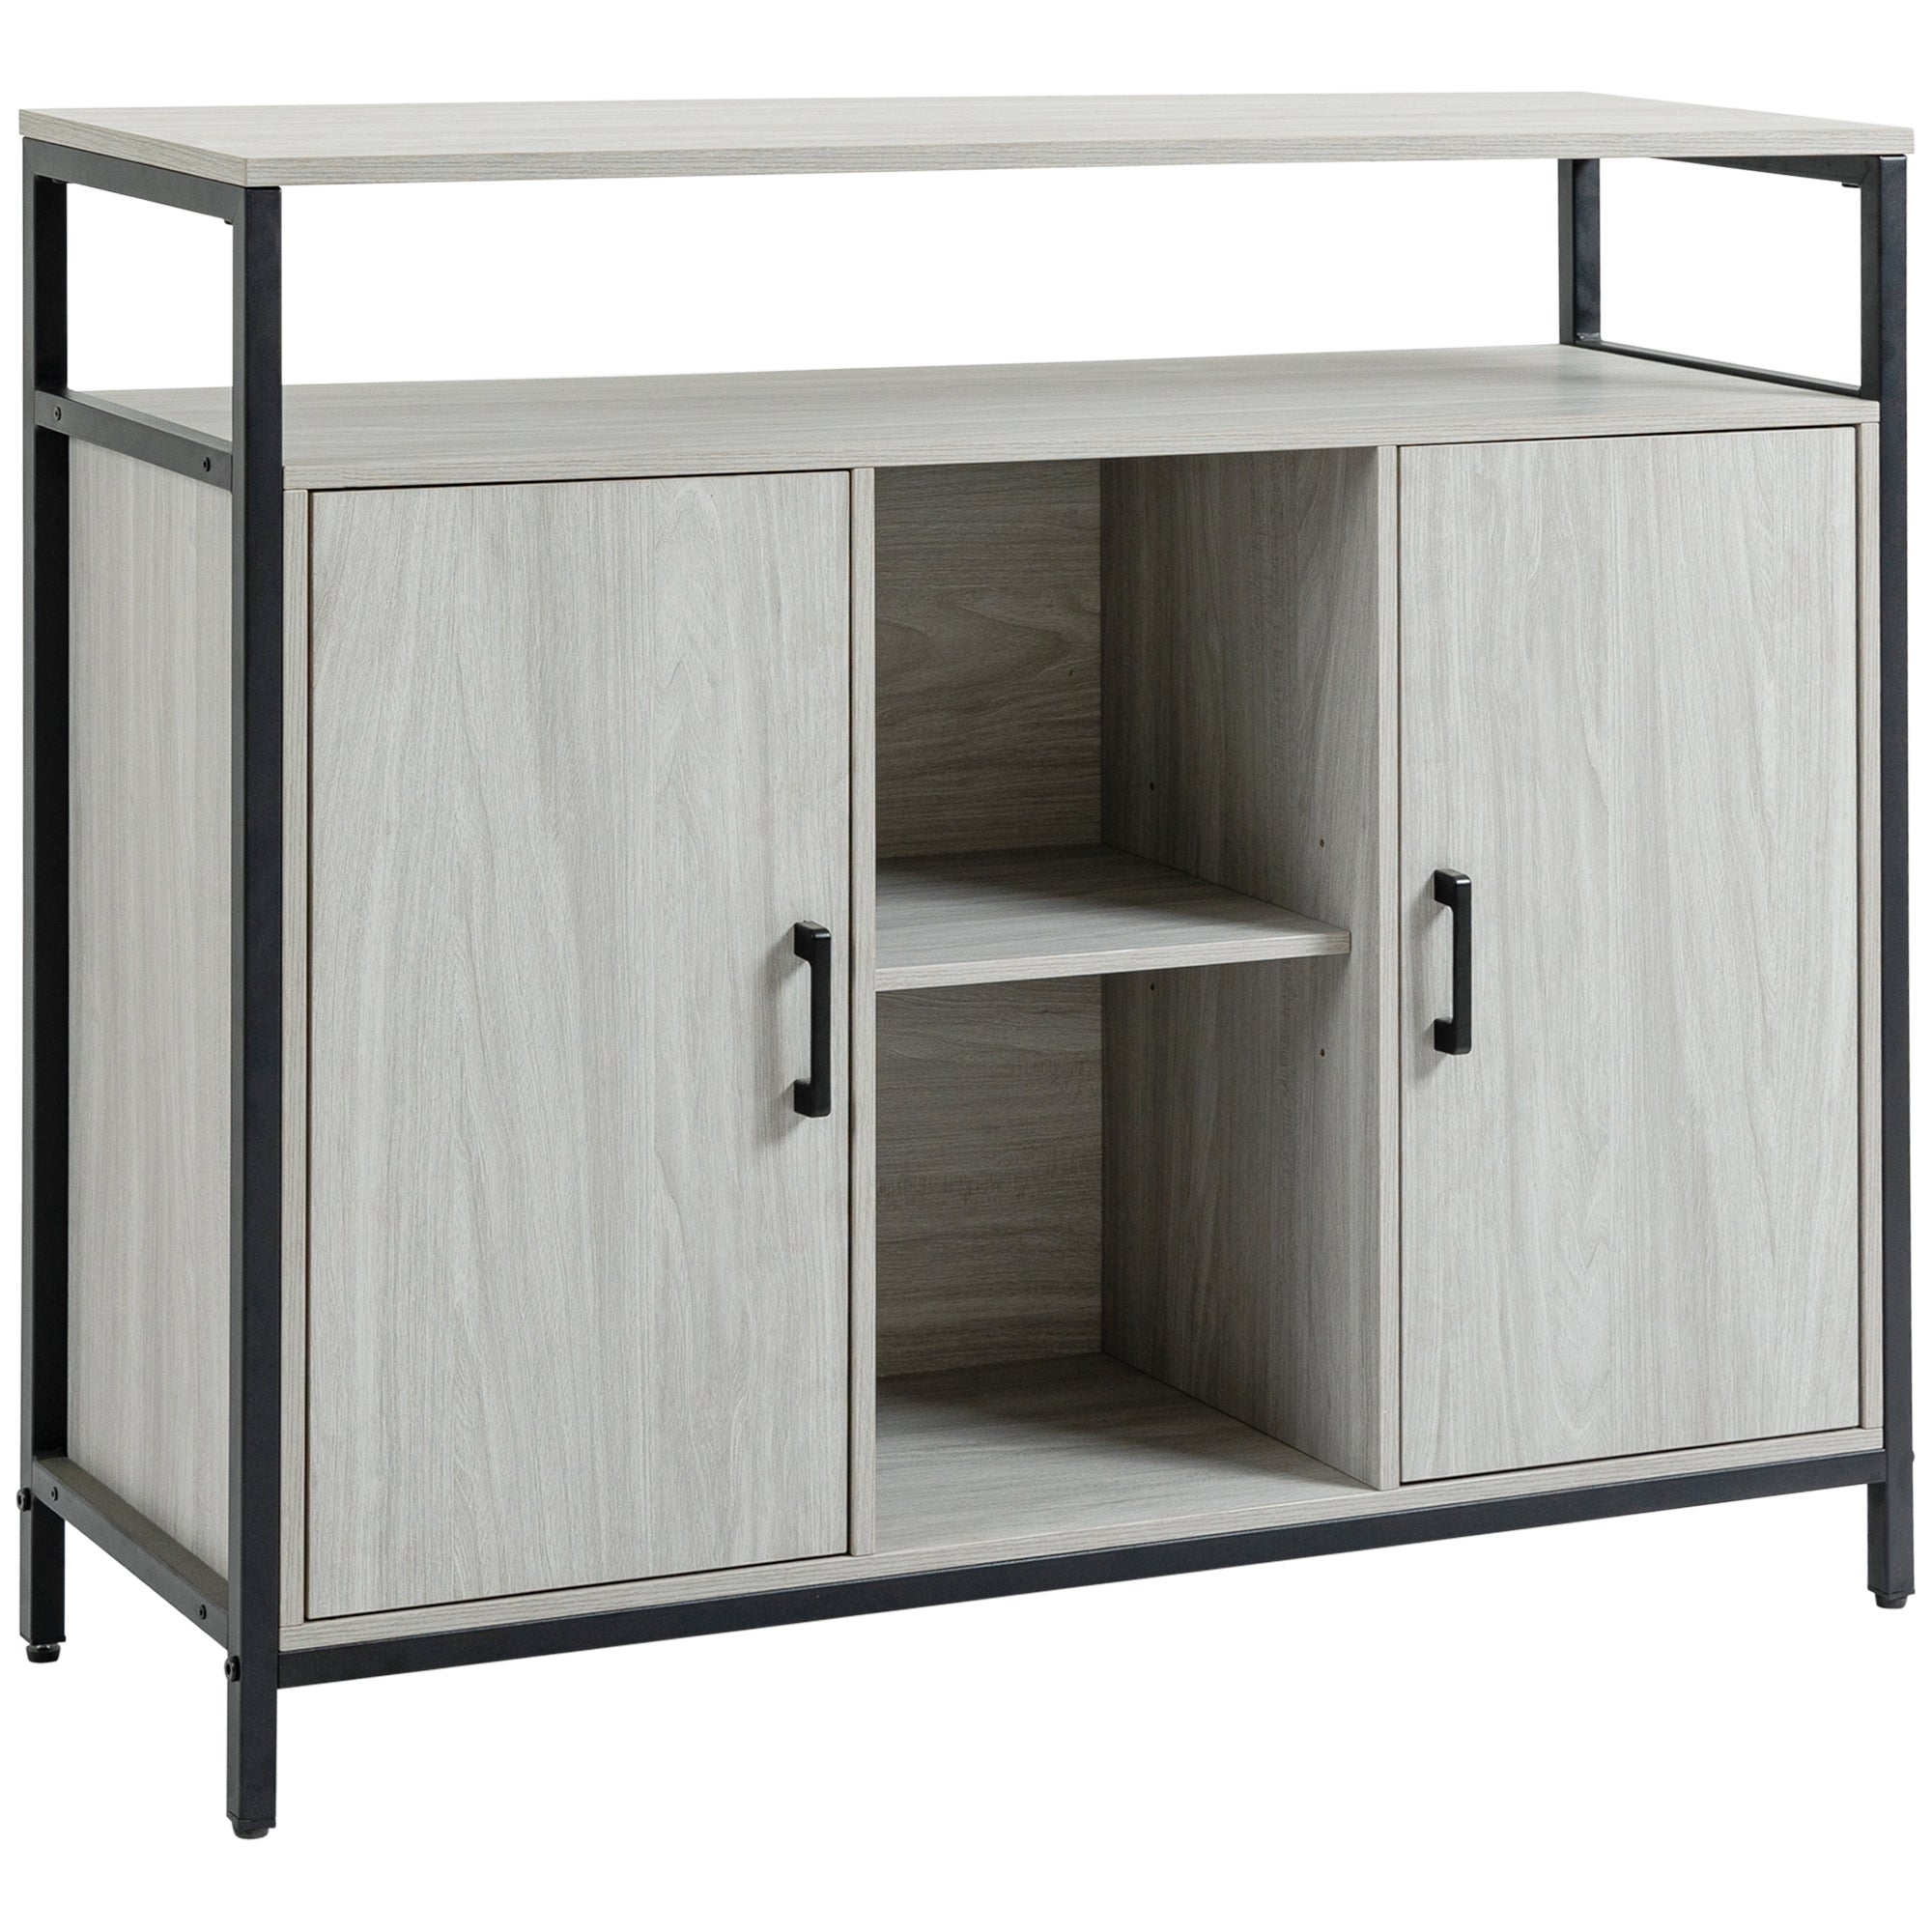 HOMCOM Modern Sideboard Storage Cabinet with Adjustable Shelves Light Grey  | TJ Hughes